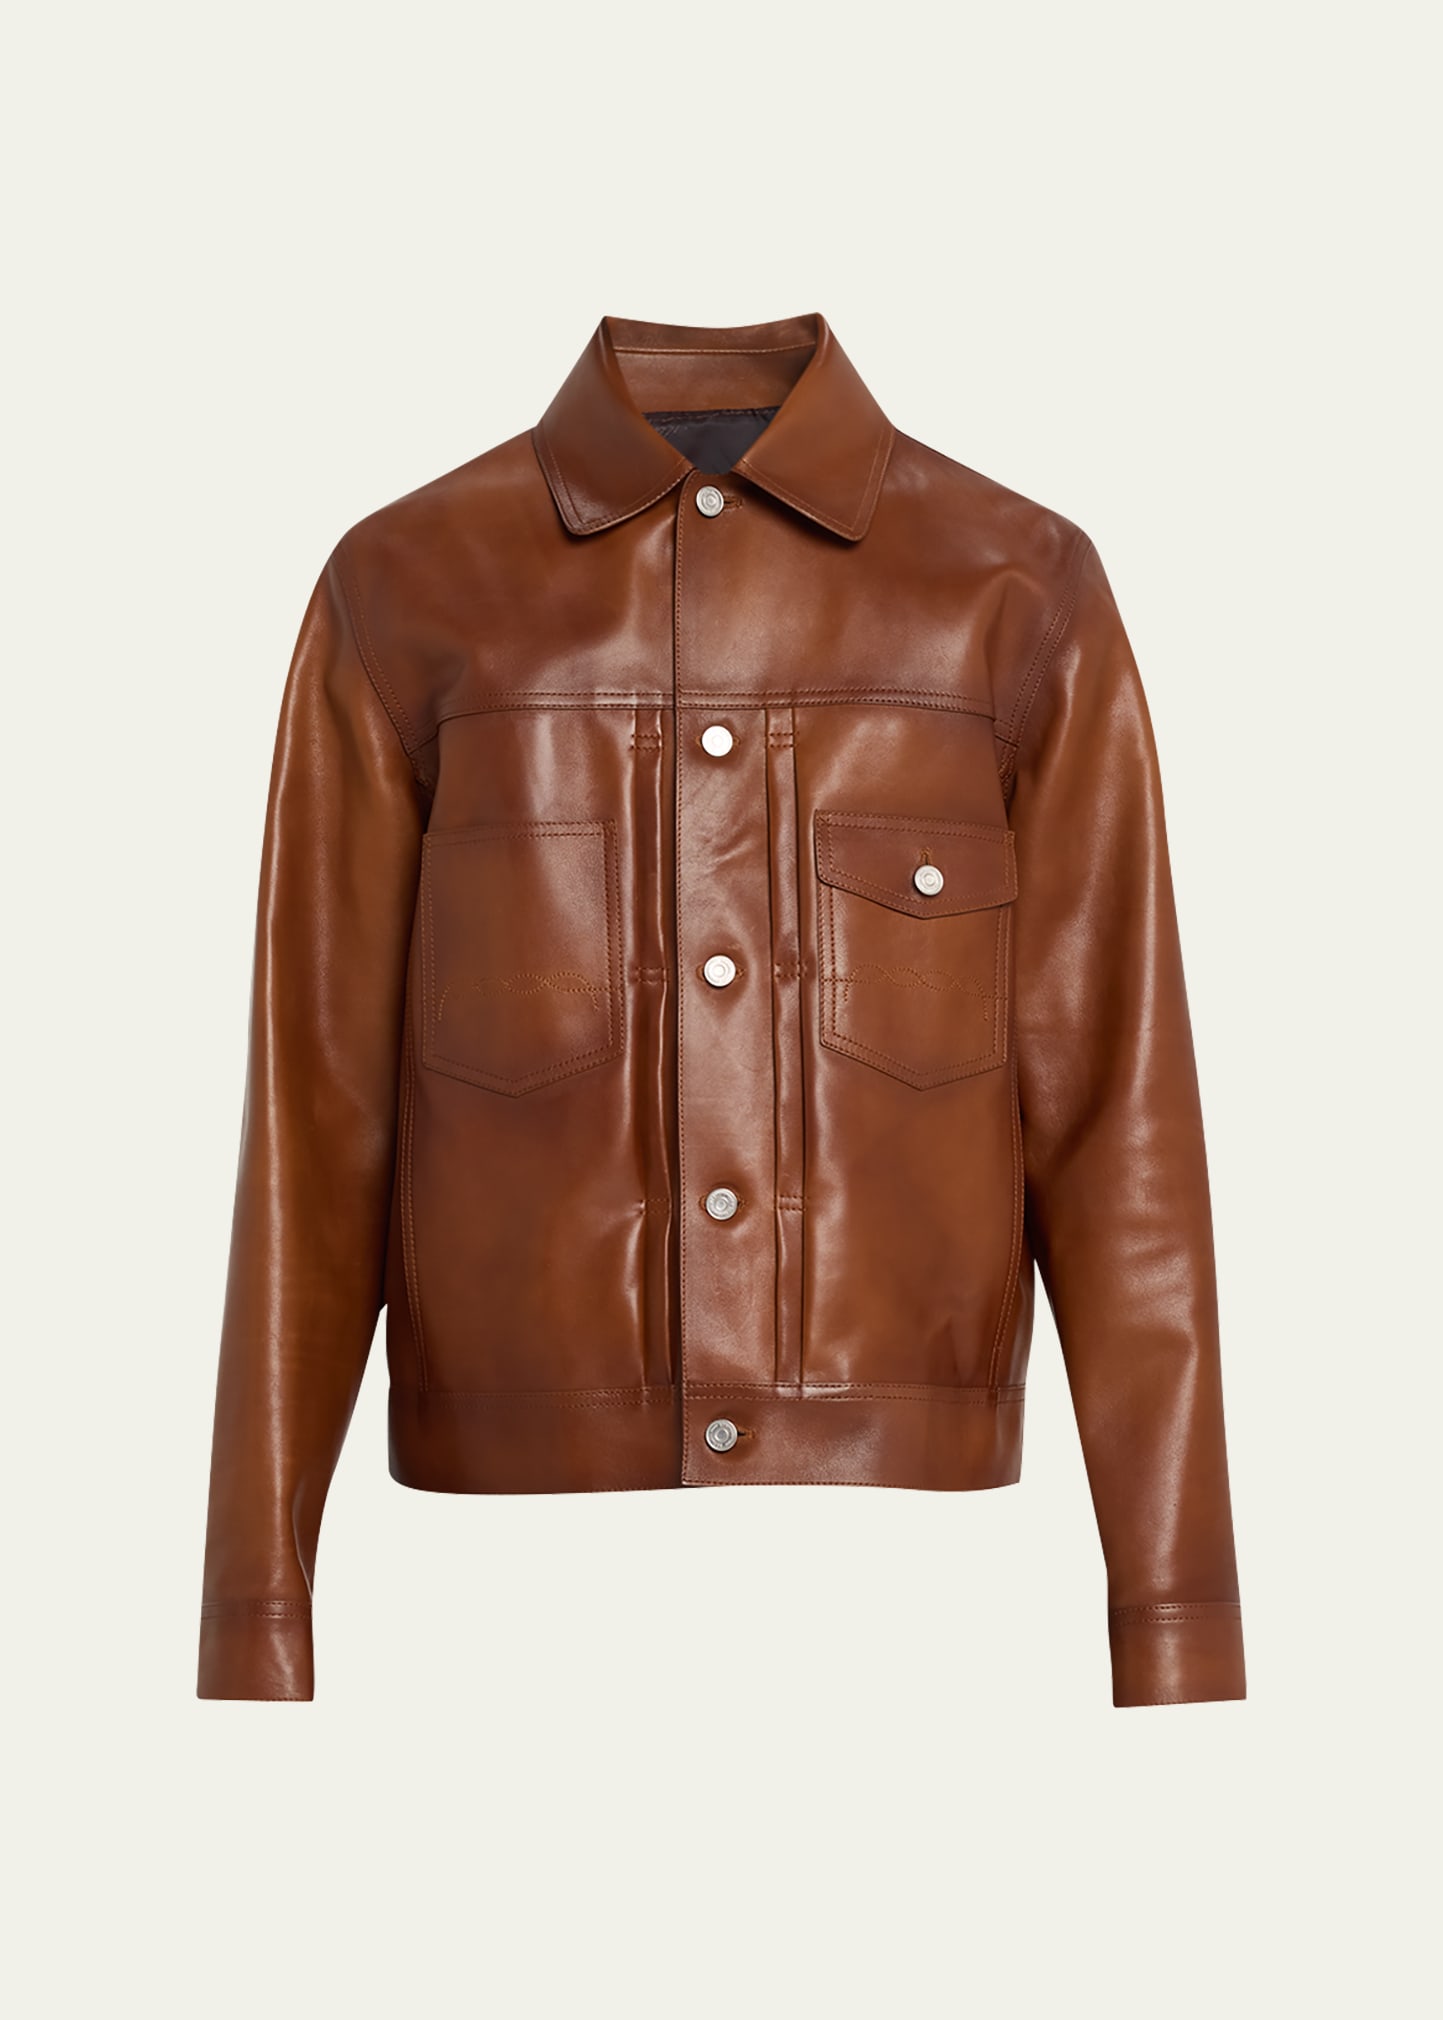 Berluti Men's Leather Trucker Jacket In Honey Cognac